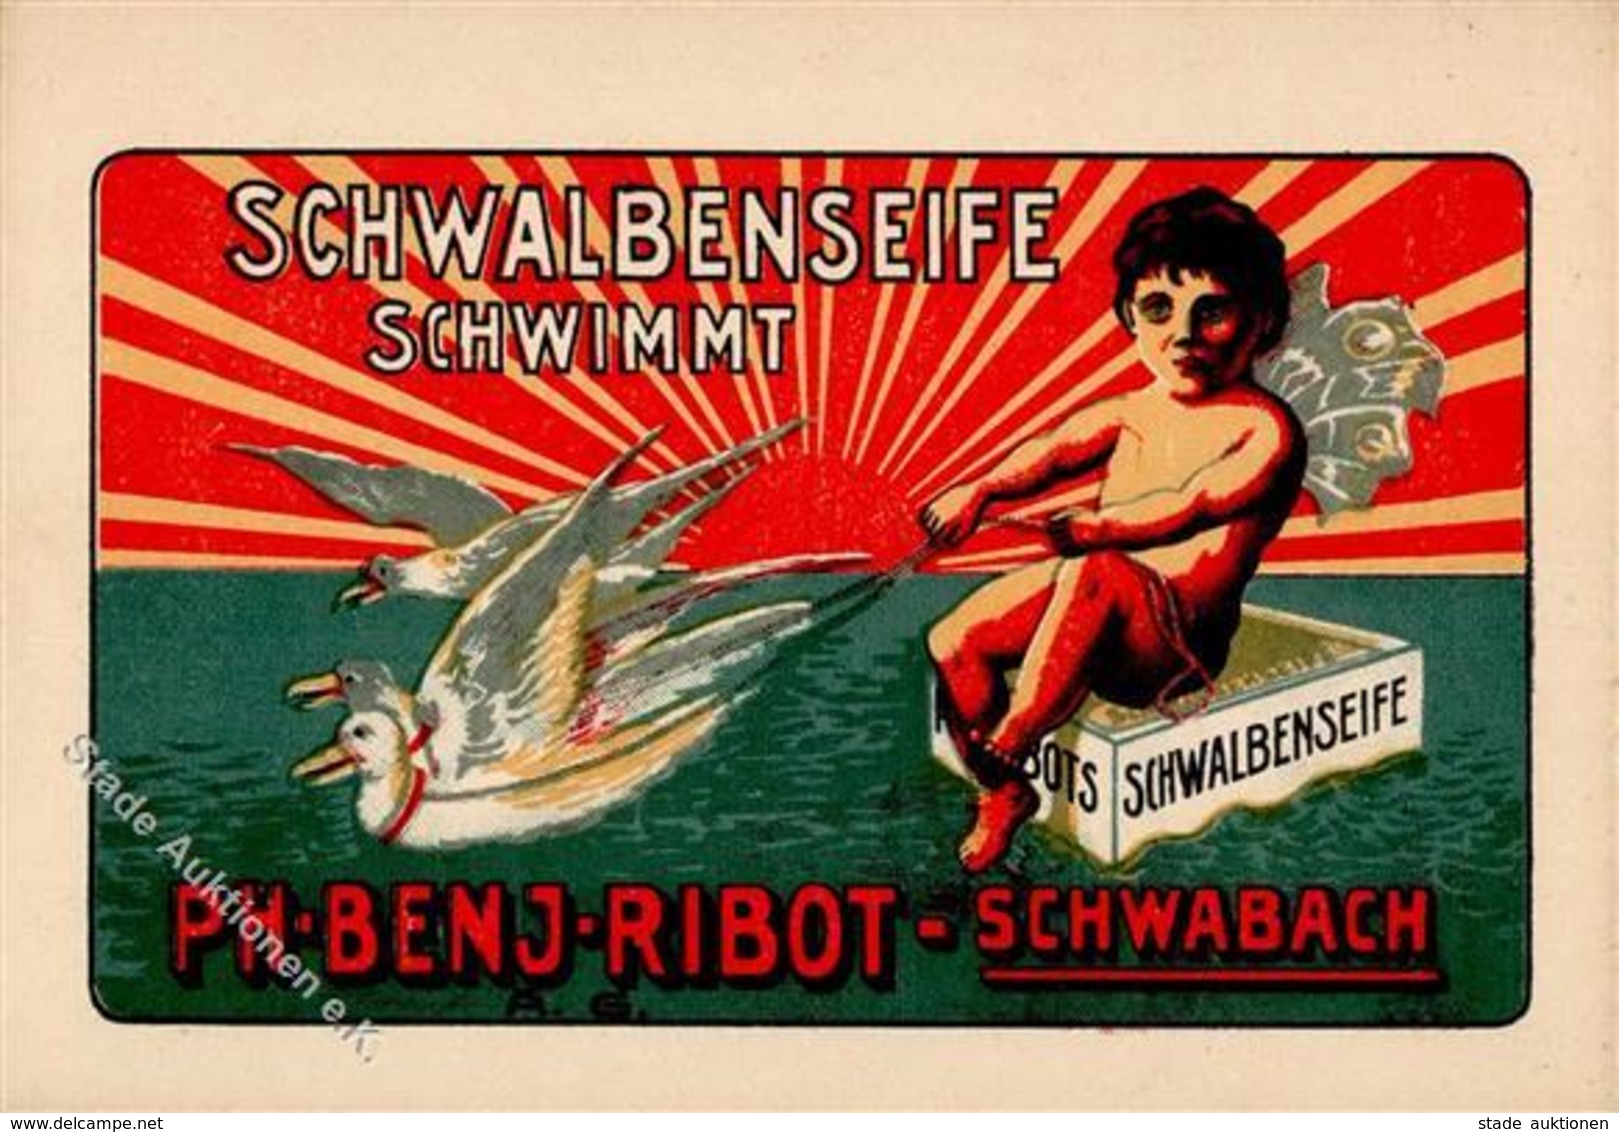 Werbung Kosmetik Schwabach (8540) Schwalbenseife Ph. Benj. Ribot Werbe AK I-II Publicite - Advertising